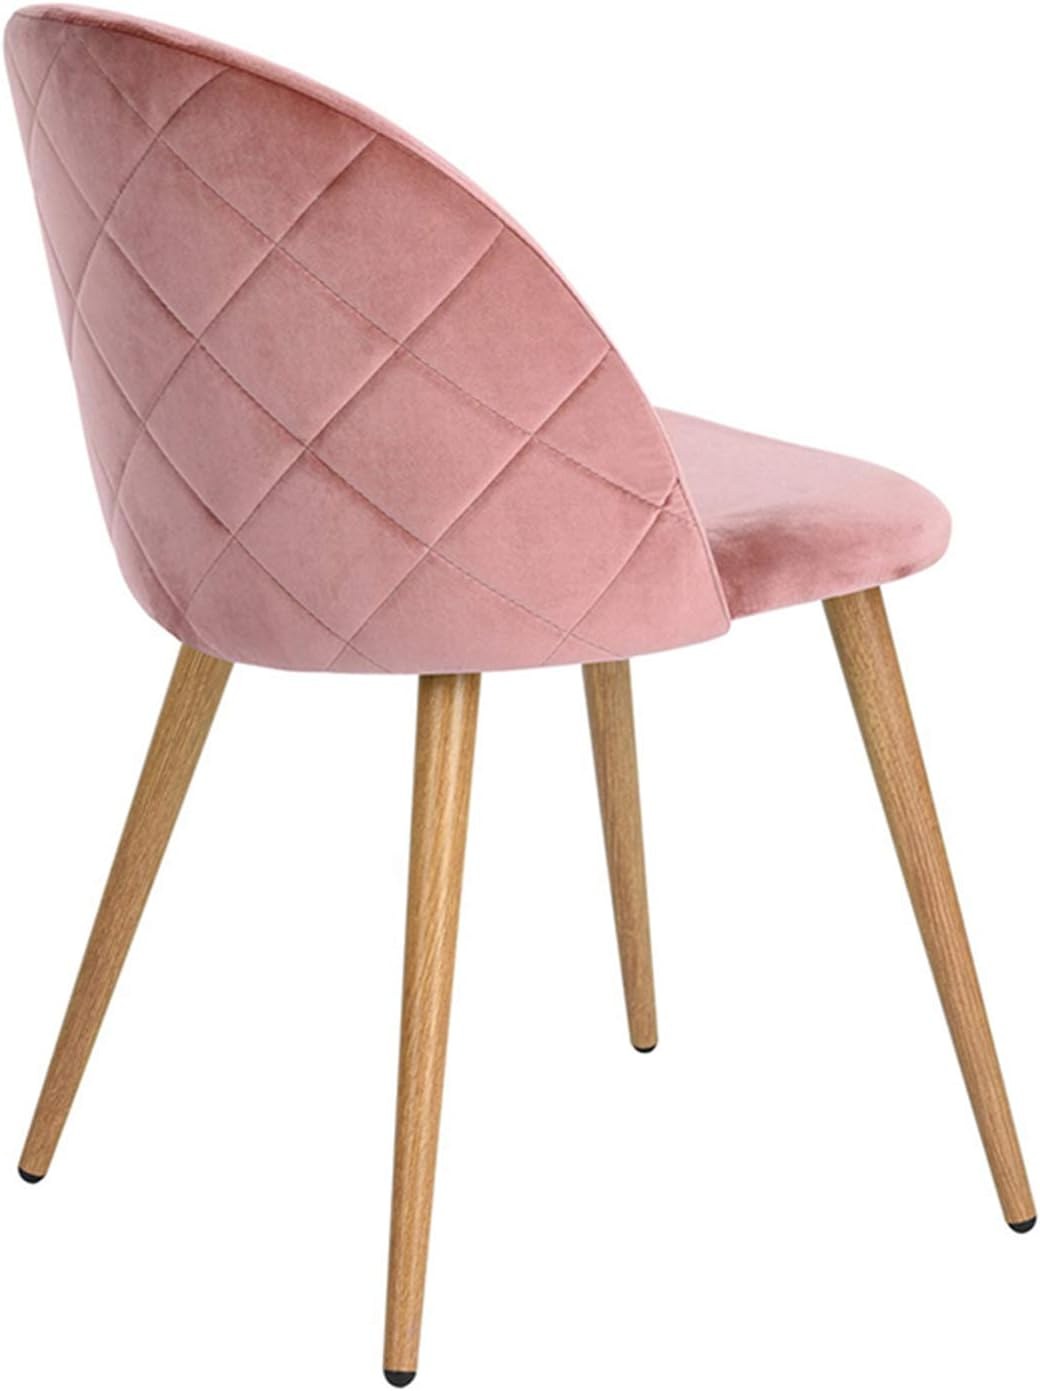 стулья с обивкой из ткани